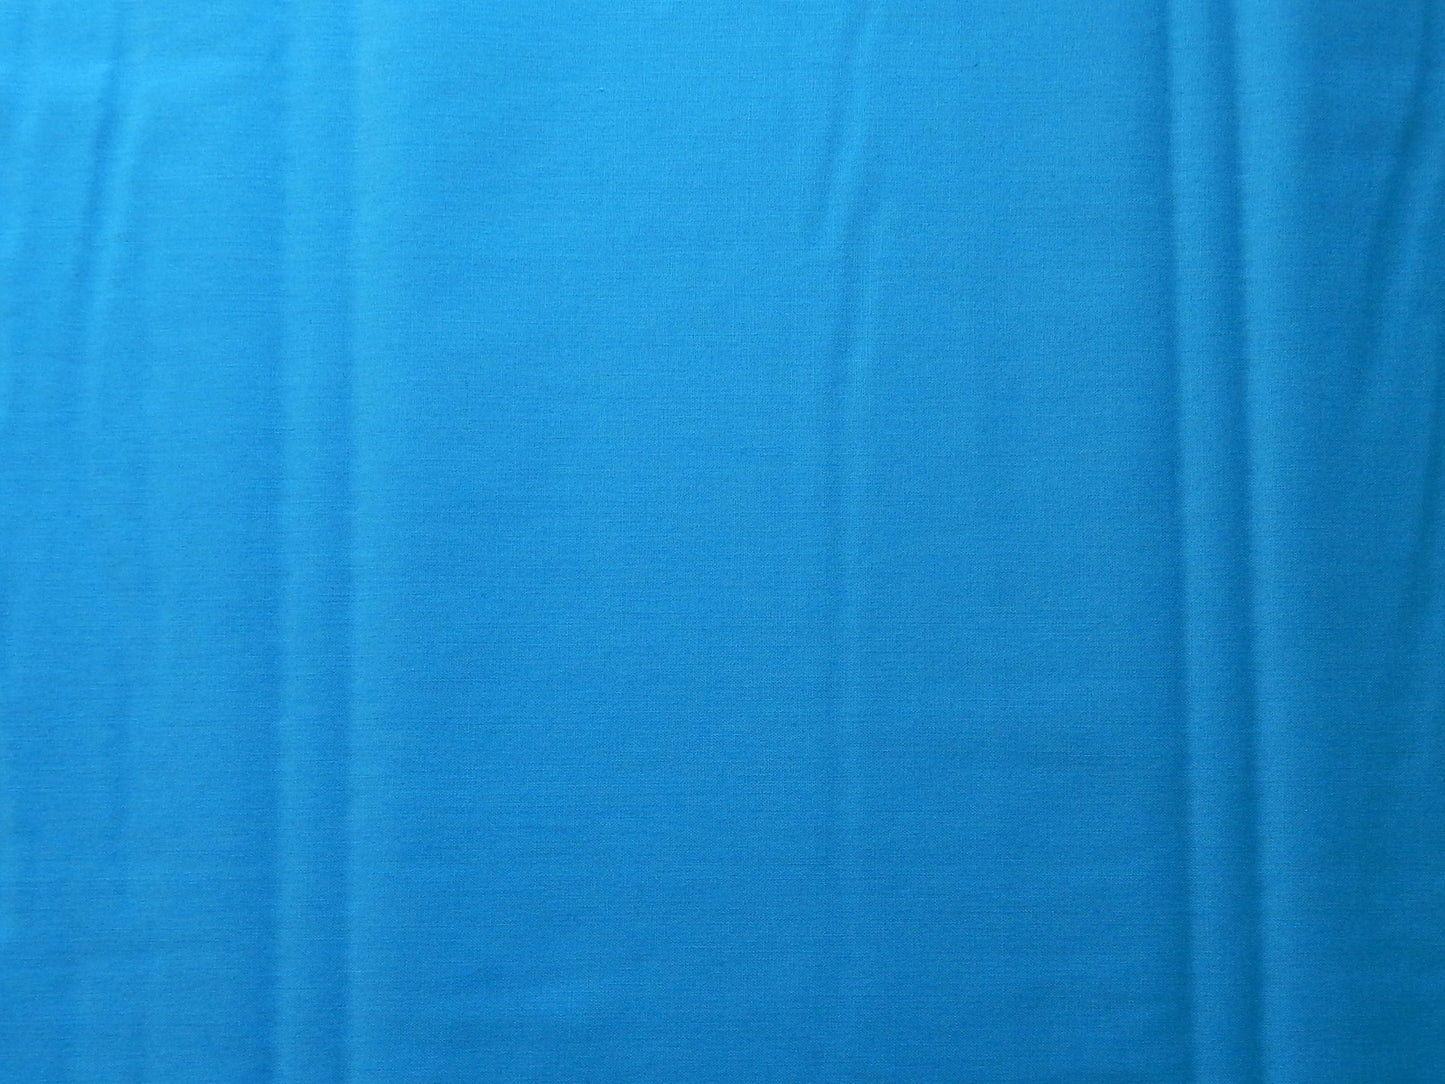 paintbrush studios artesian bright blue quilting fabric